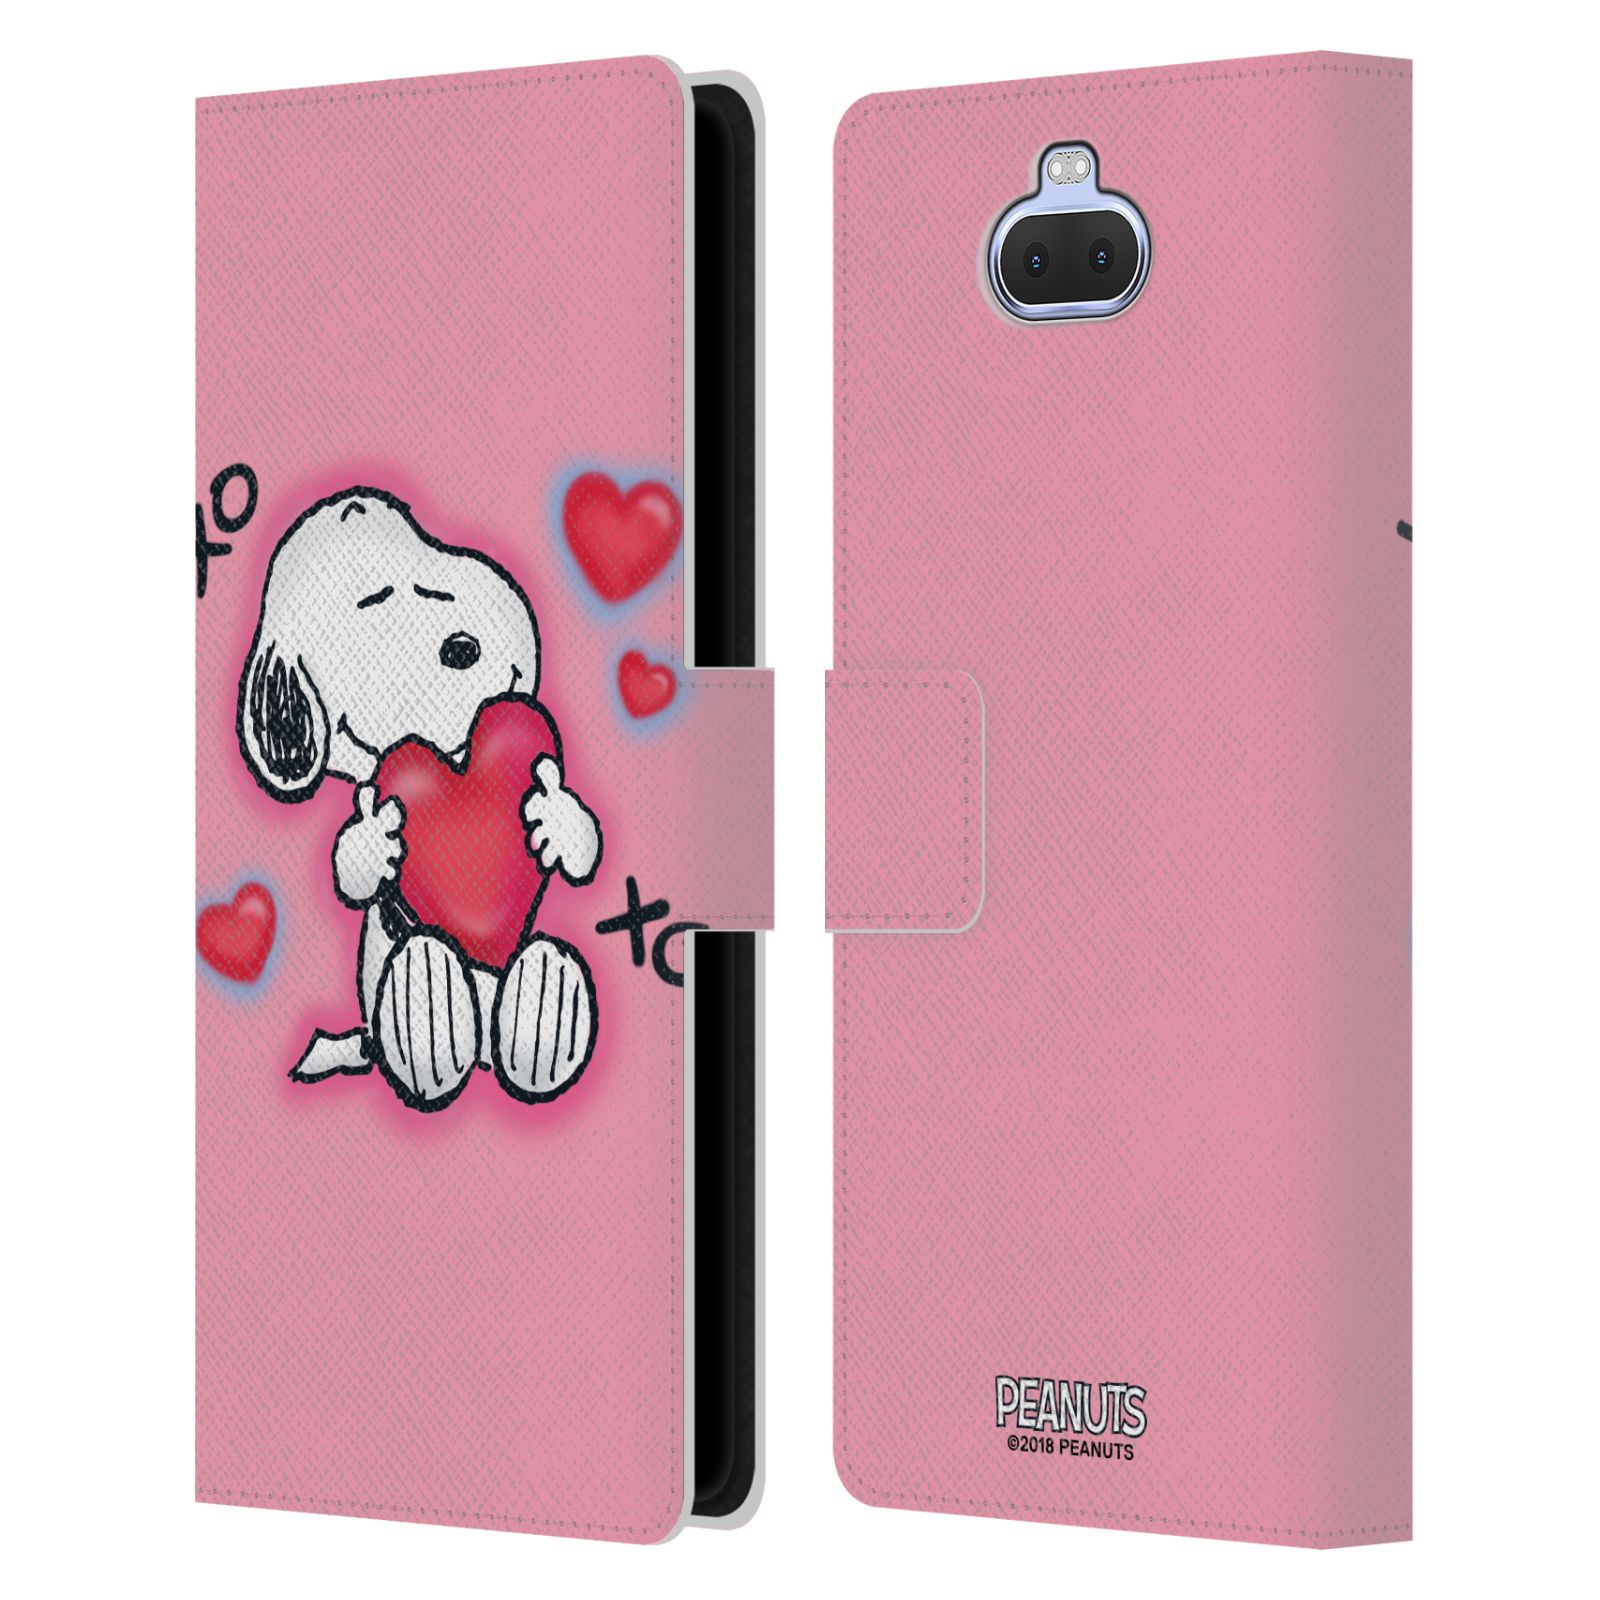 Pouzdro na mobil Sony Xperia 10 PLUS  - HEAD CASE - Peanuts - Snoopy a srdíčka